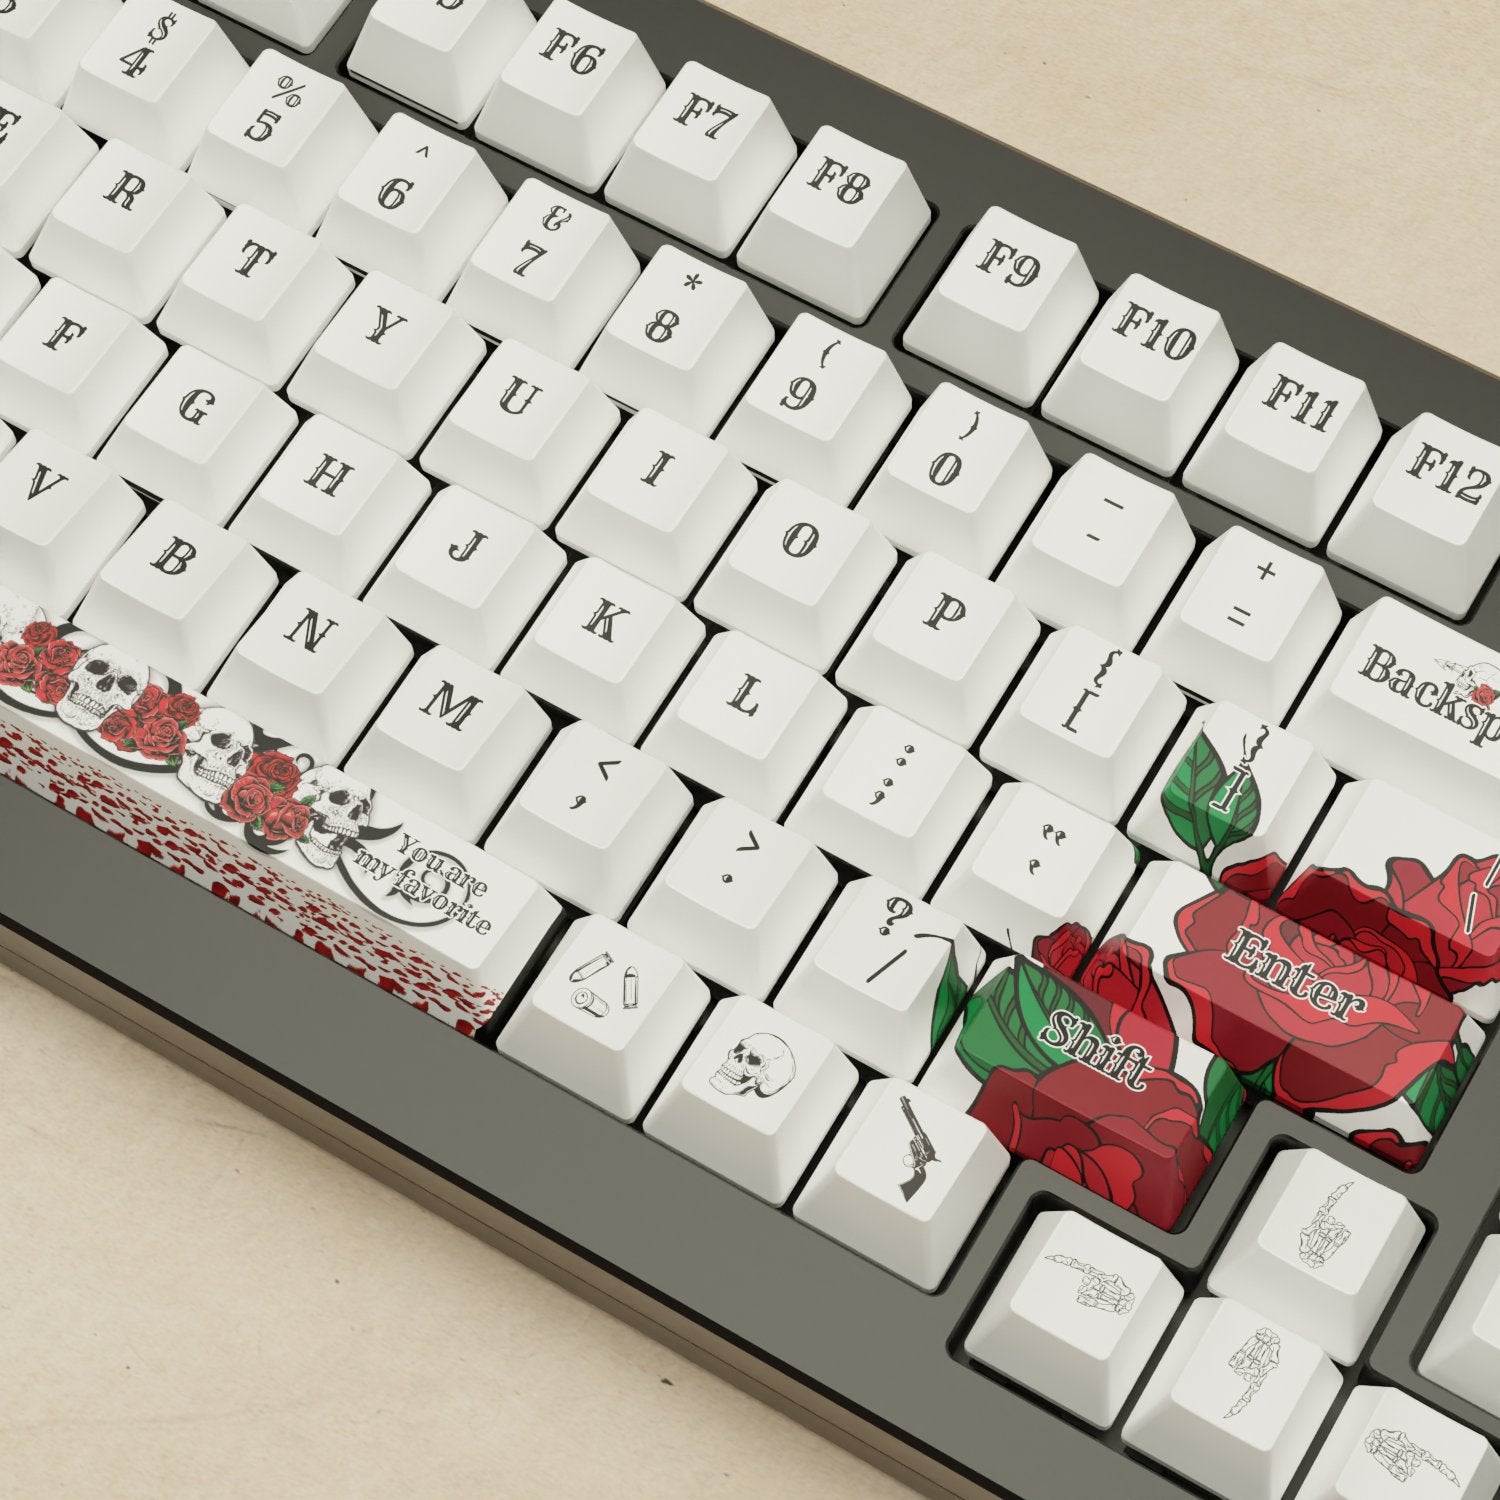 Monsgeek M1W - 75% Blender 3D ( Skull & Roses ) Mechanical Keyboard - Goblintechkeys